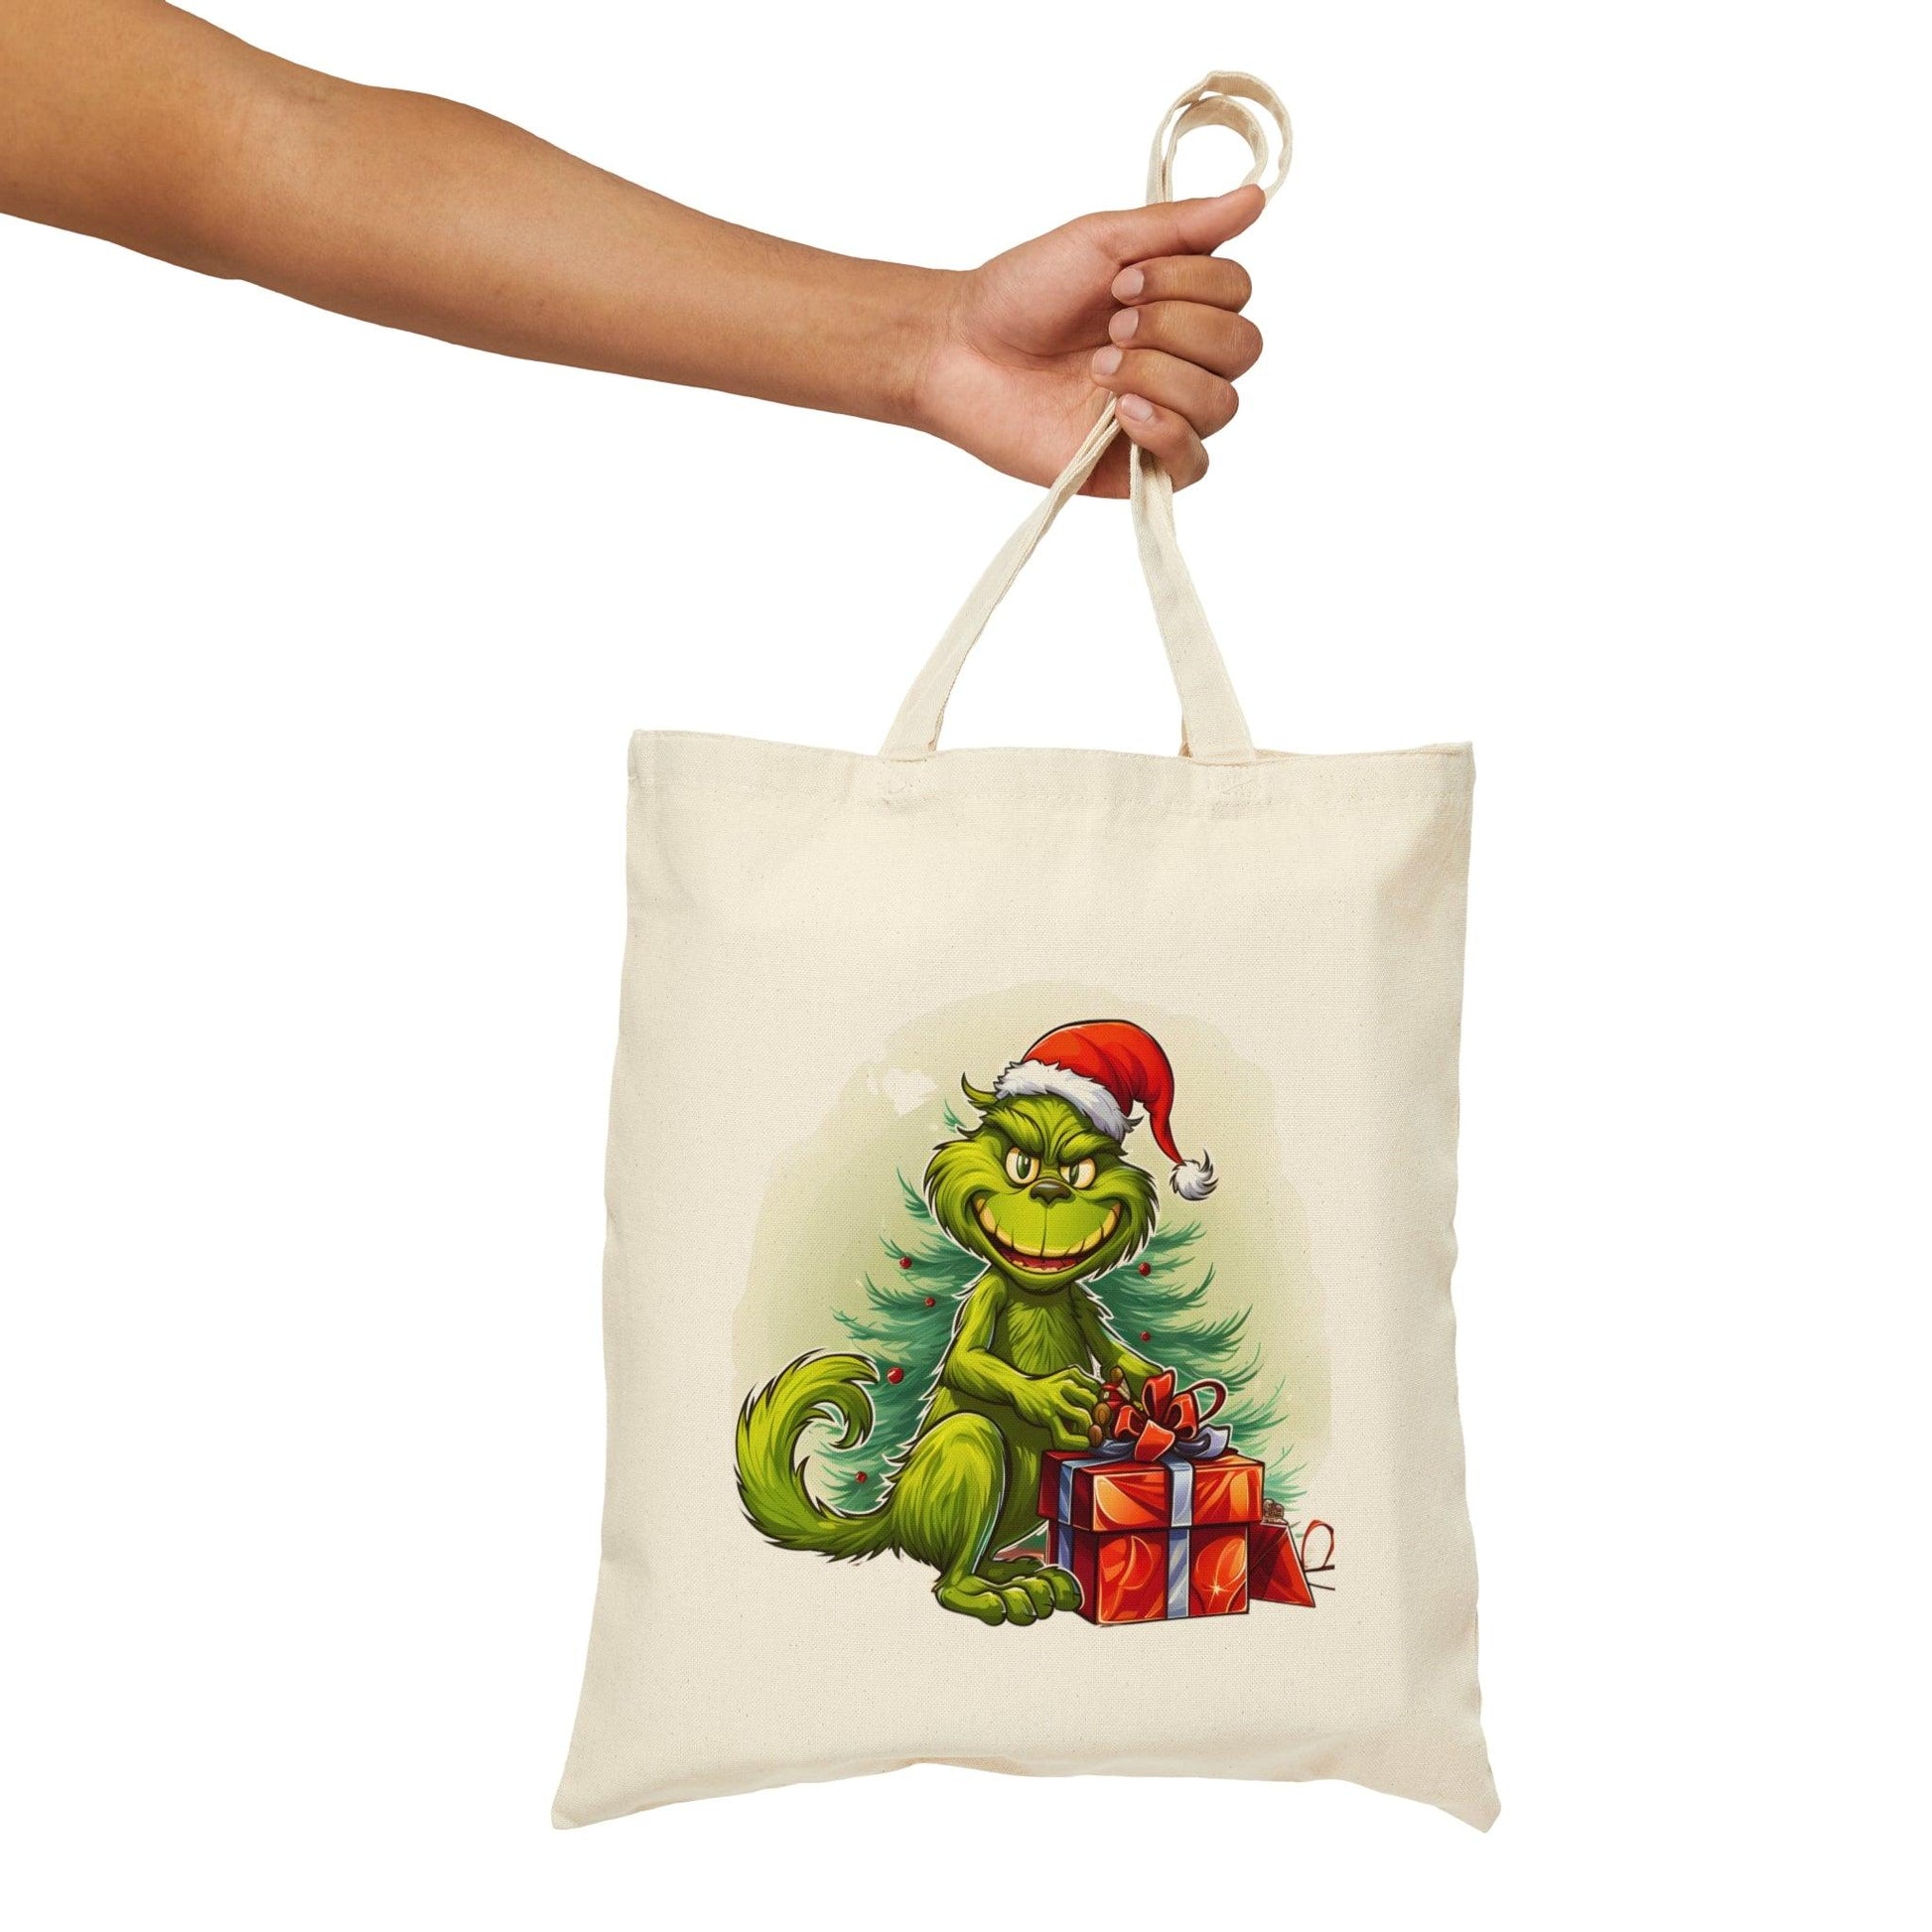 Grinch Tote Bag Christmas Bag Christmas Tote Bag The Grinch Bag Grinch Stealing Christmas Canvas Tote Bag Shopping Bag Gift For Women Totes Birthday Gift Bag - Giftsmojo